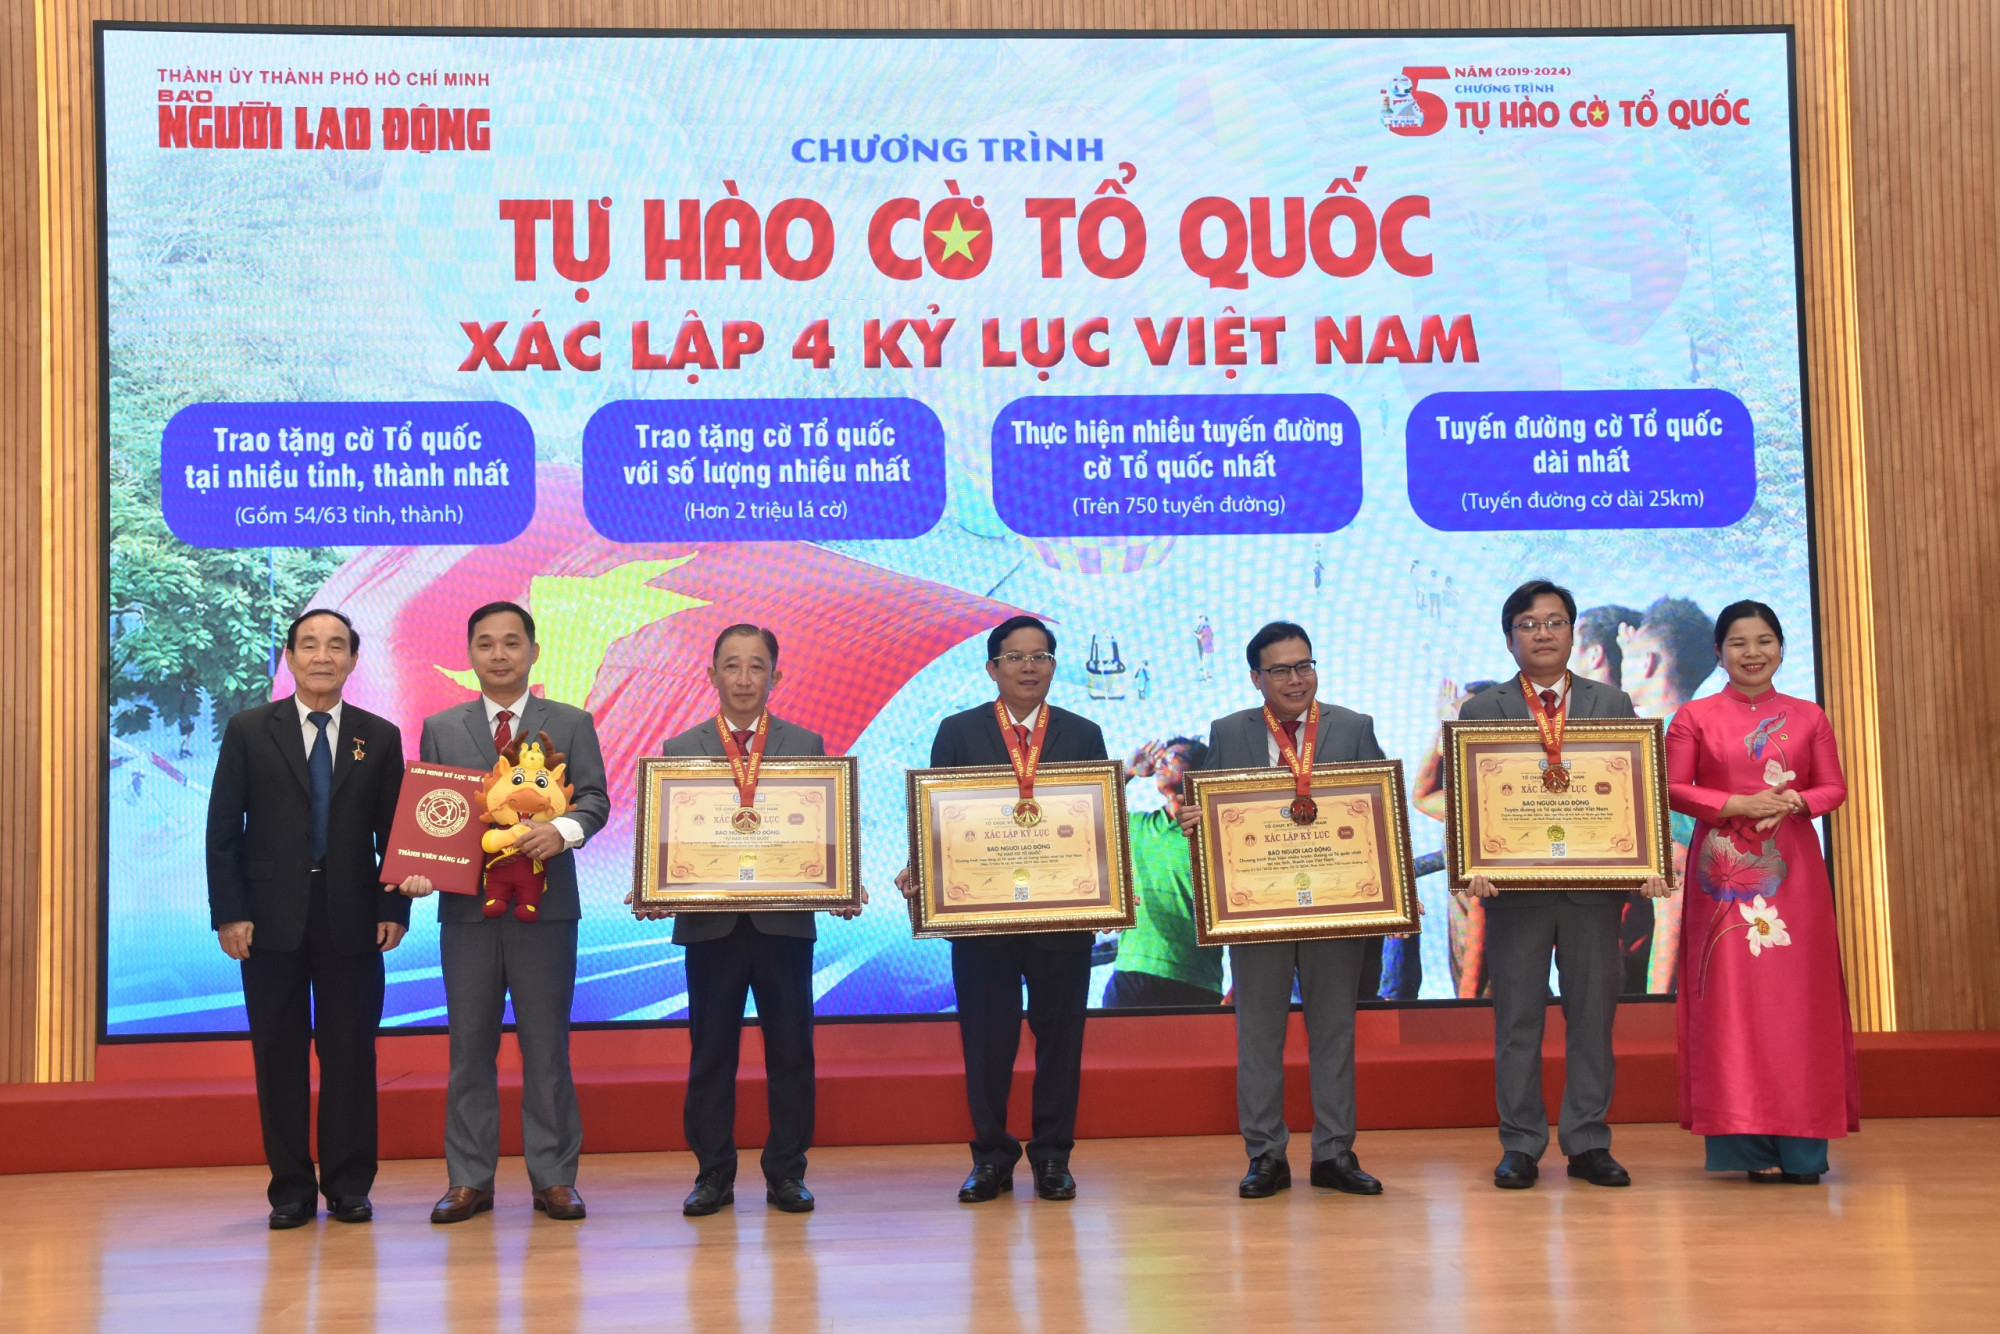  Đại diện Hội Kỷ lục gia Việt Nam trao 4 kỷ lục cho Báo Người Lao Động - Ảnh: BTC